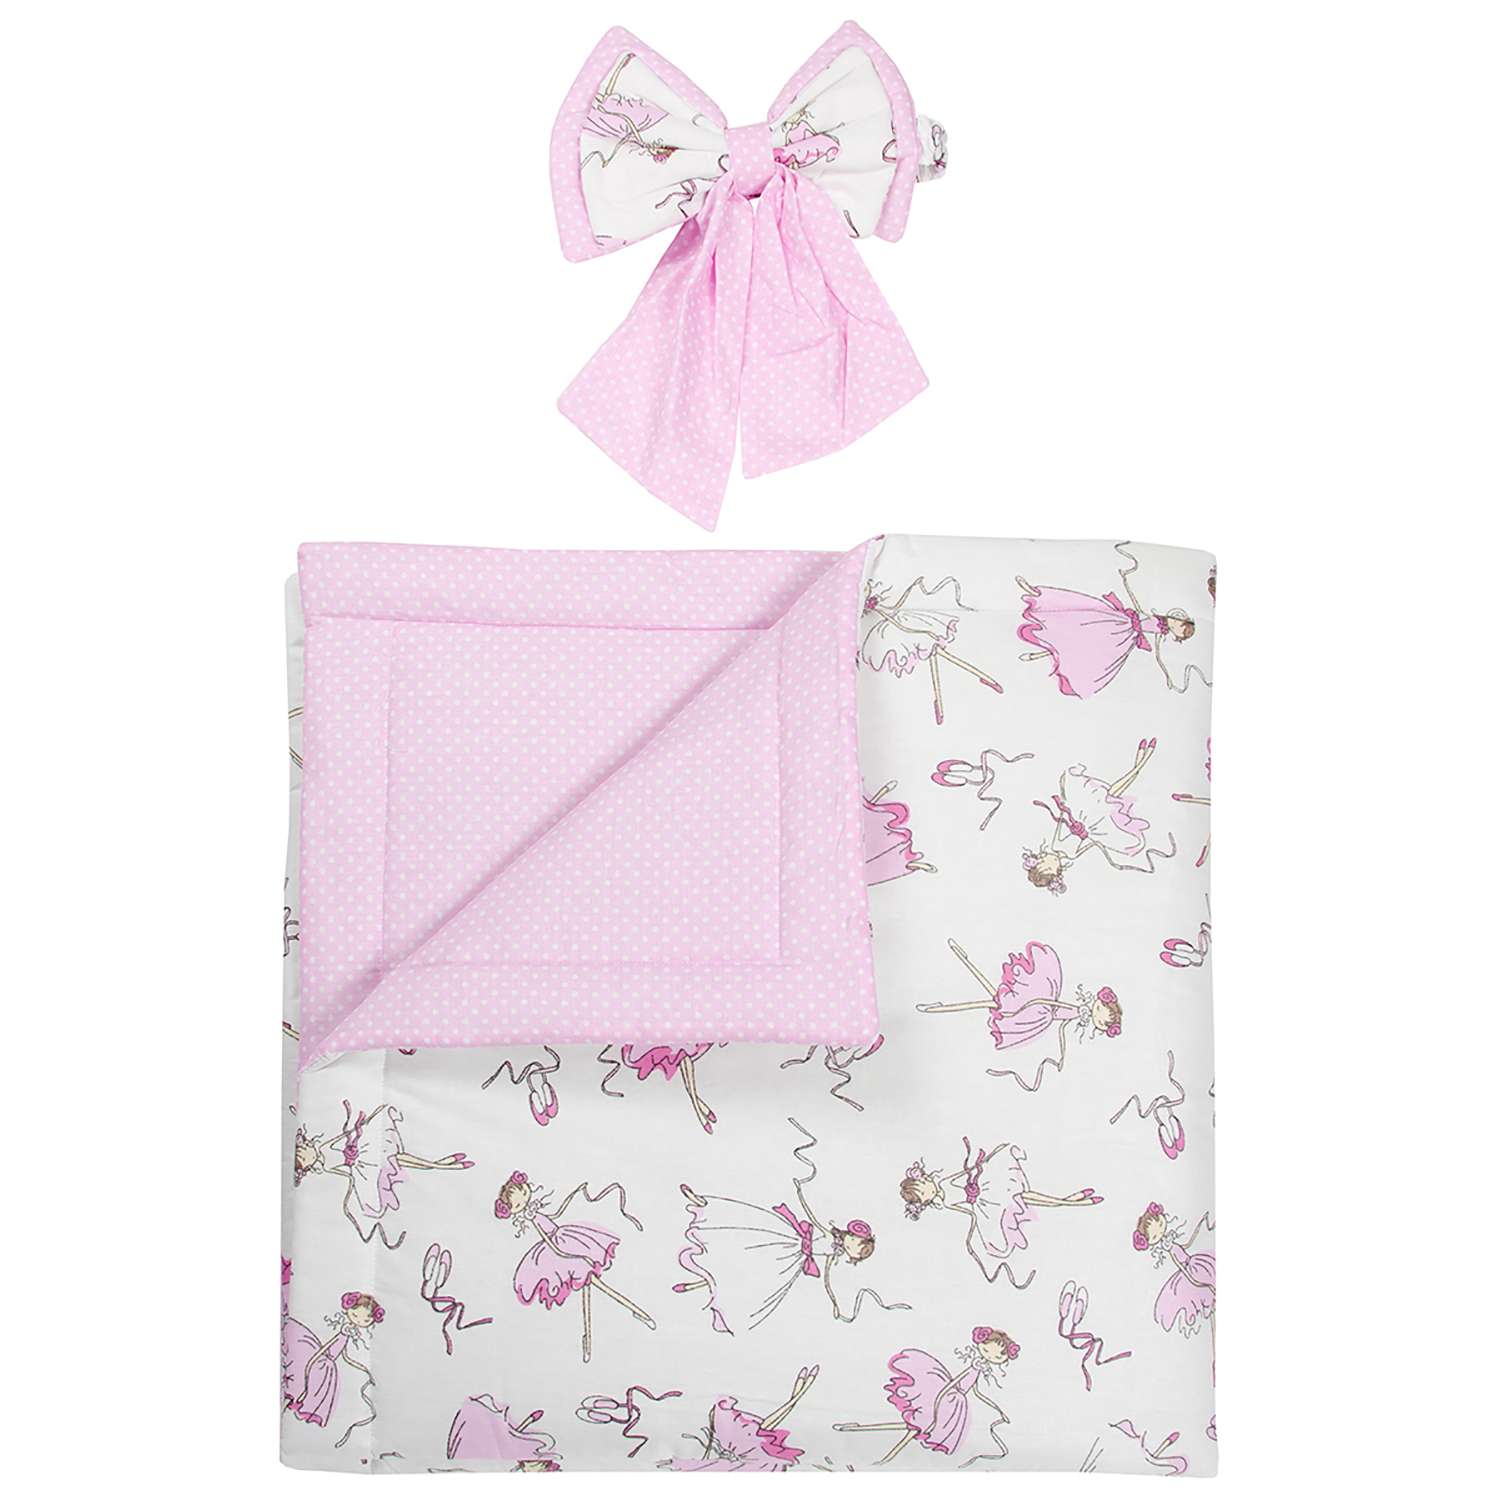 Конверт-одеяло Чудо-чадо для новорожденного на выписку Нелето балерины/розовый - фото 2